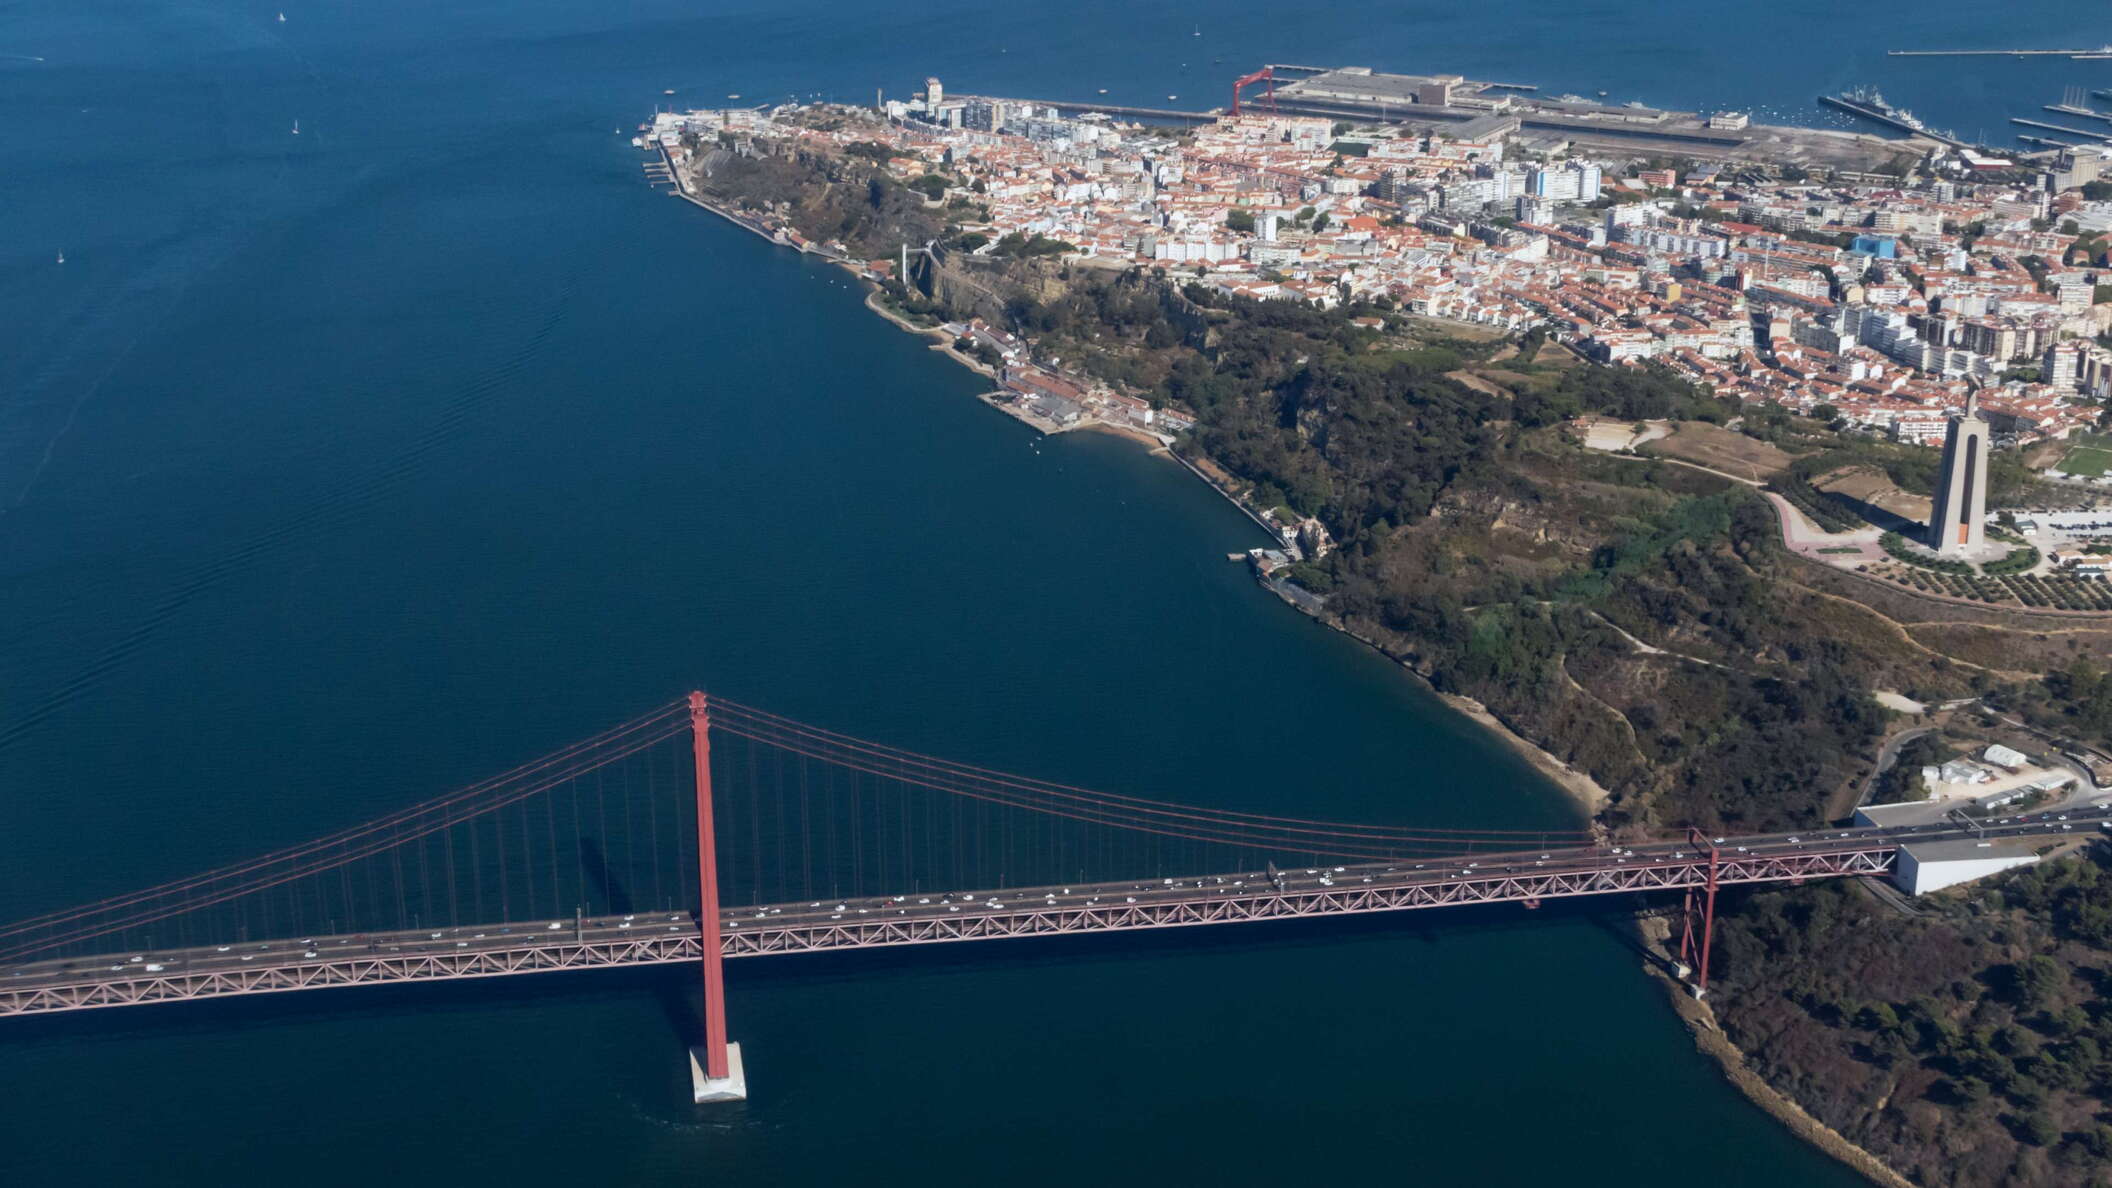 Lisboa | Rio Tejo with Ponte 25 de Abril and Cacilhas